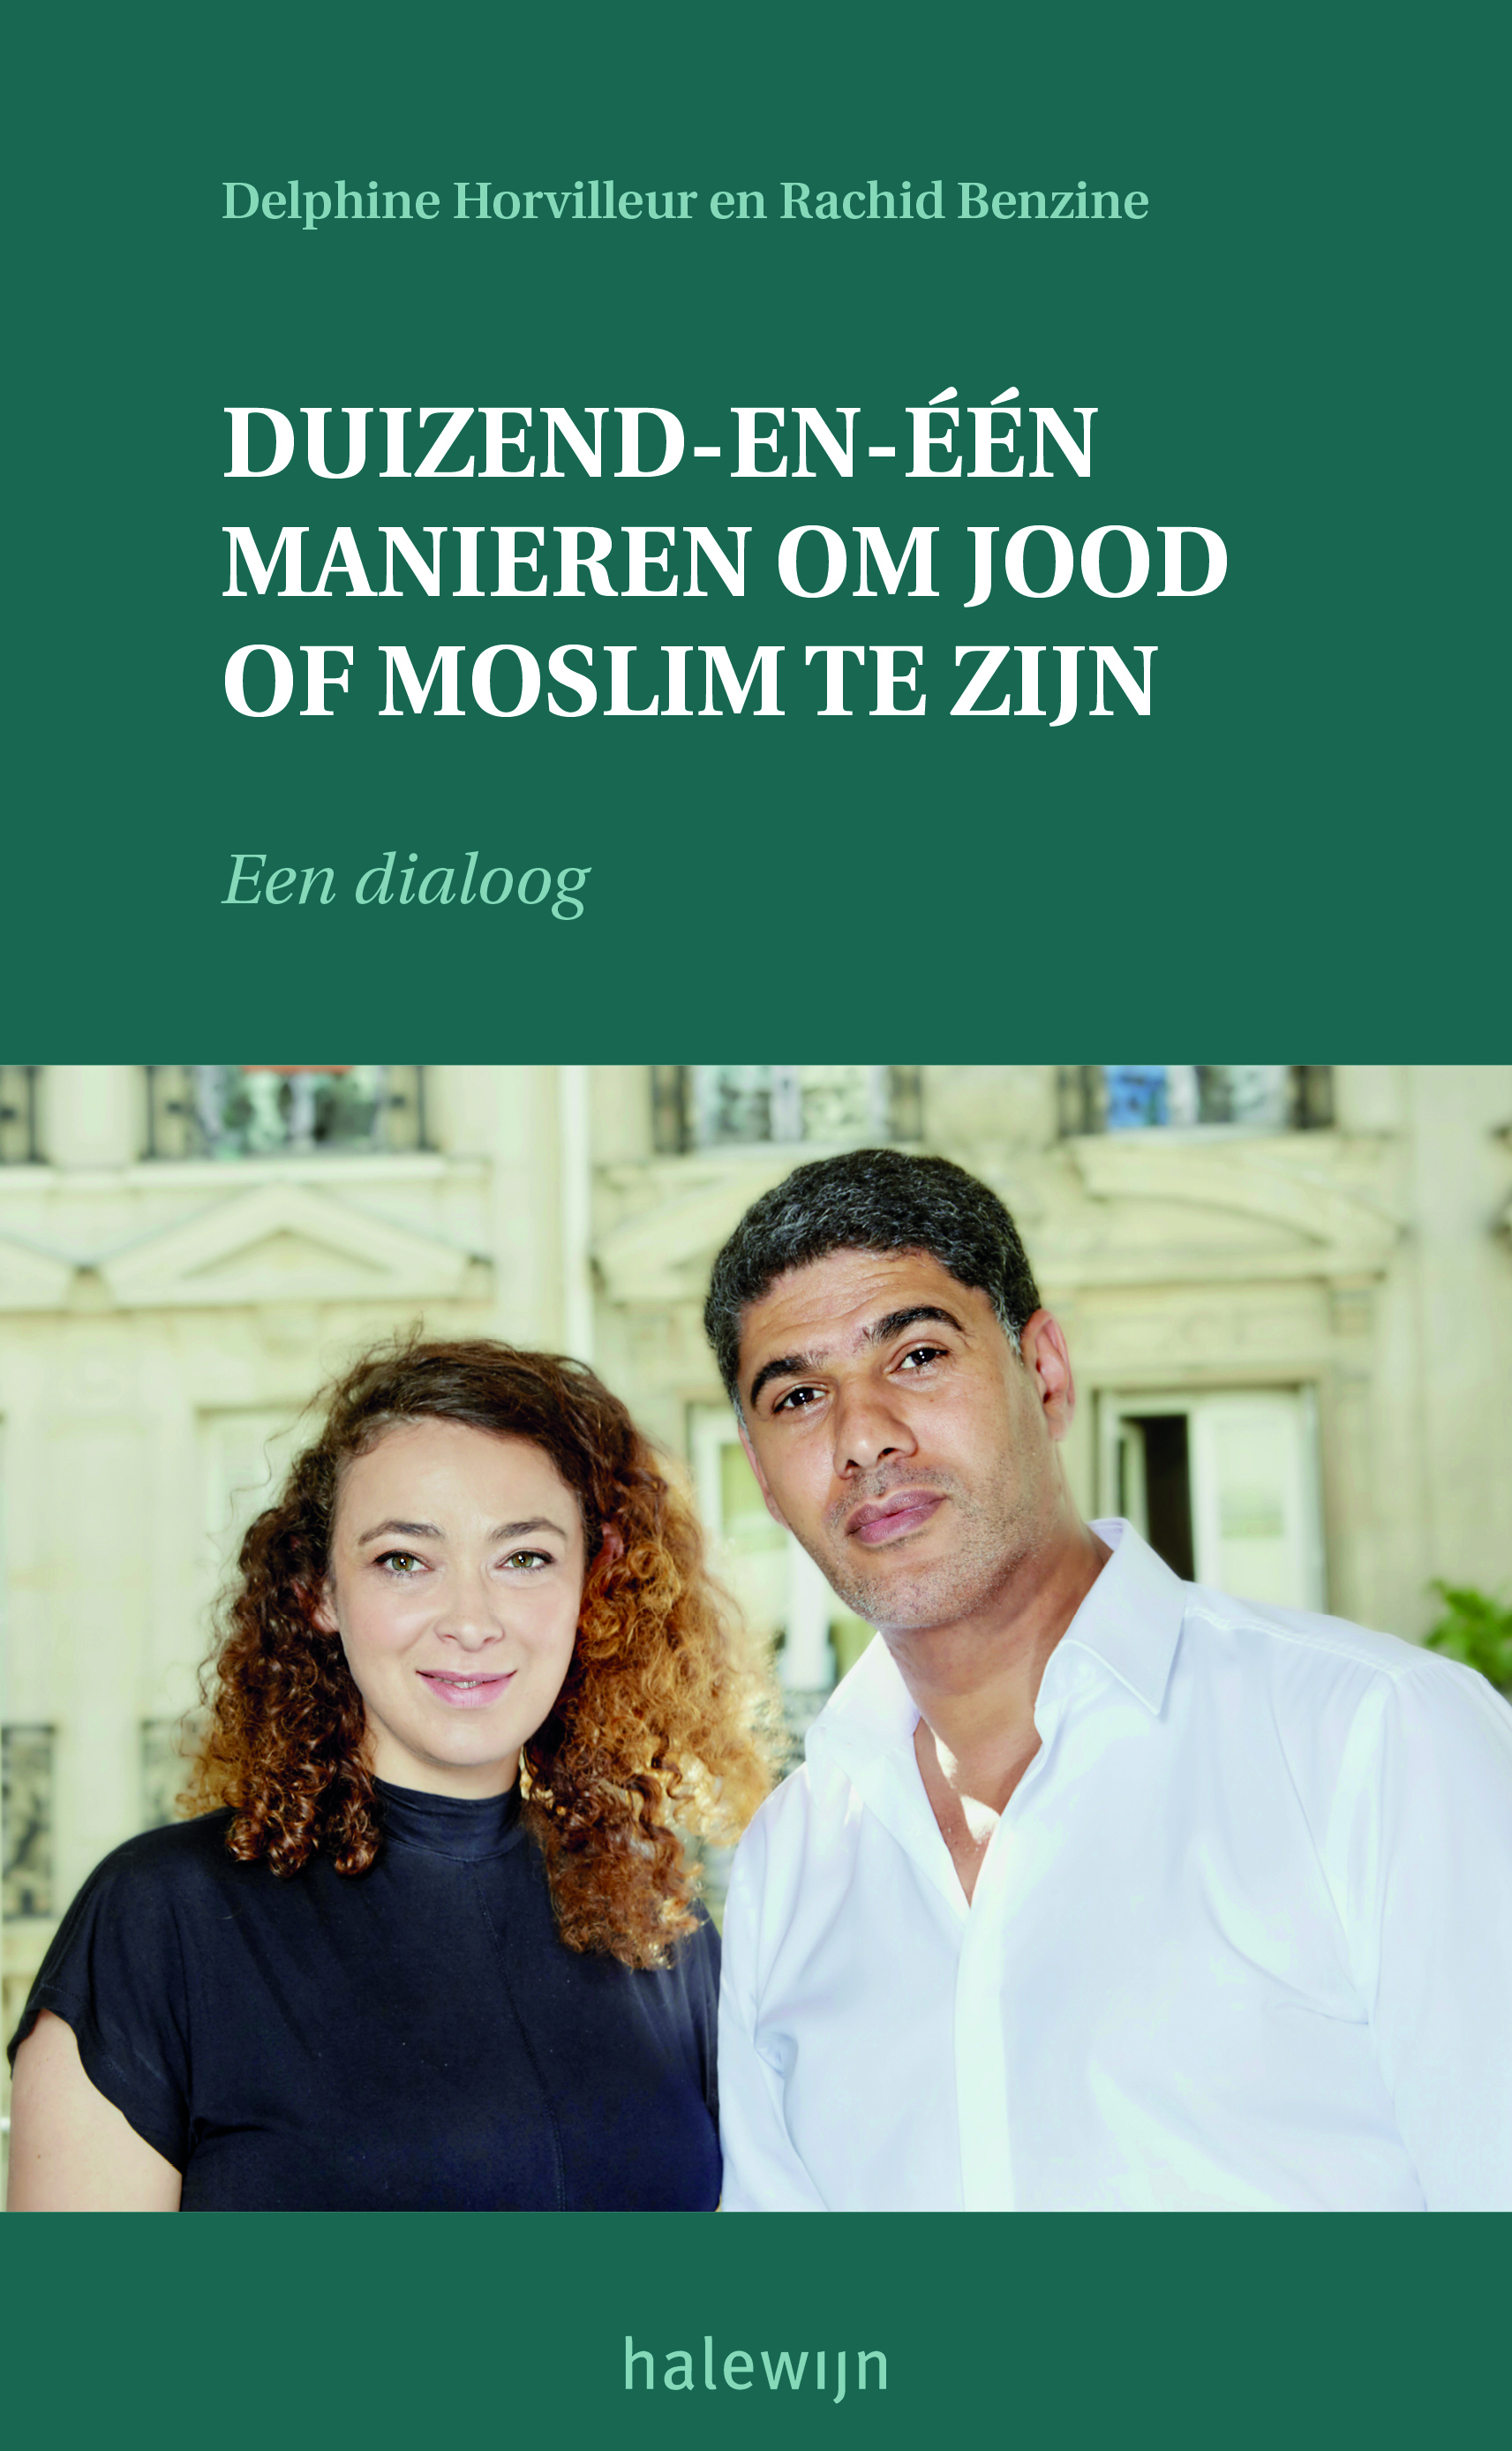 Delphine Horvilleur en Rachid Benzine, Duizend-en-een manieren om jood of moslim te zijn. Een dialoog, Halewijn-Adveniat, 179 pagina’s, 21,50 euro.